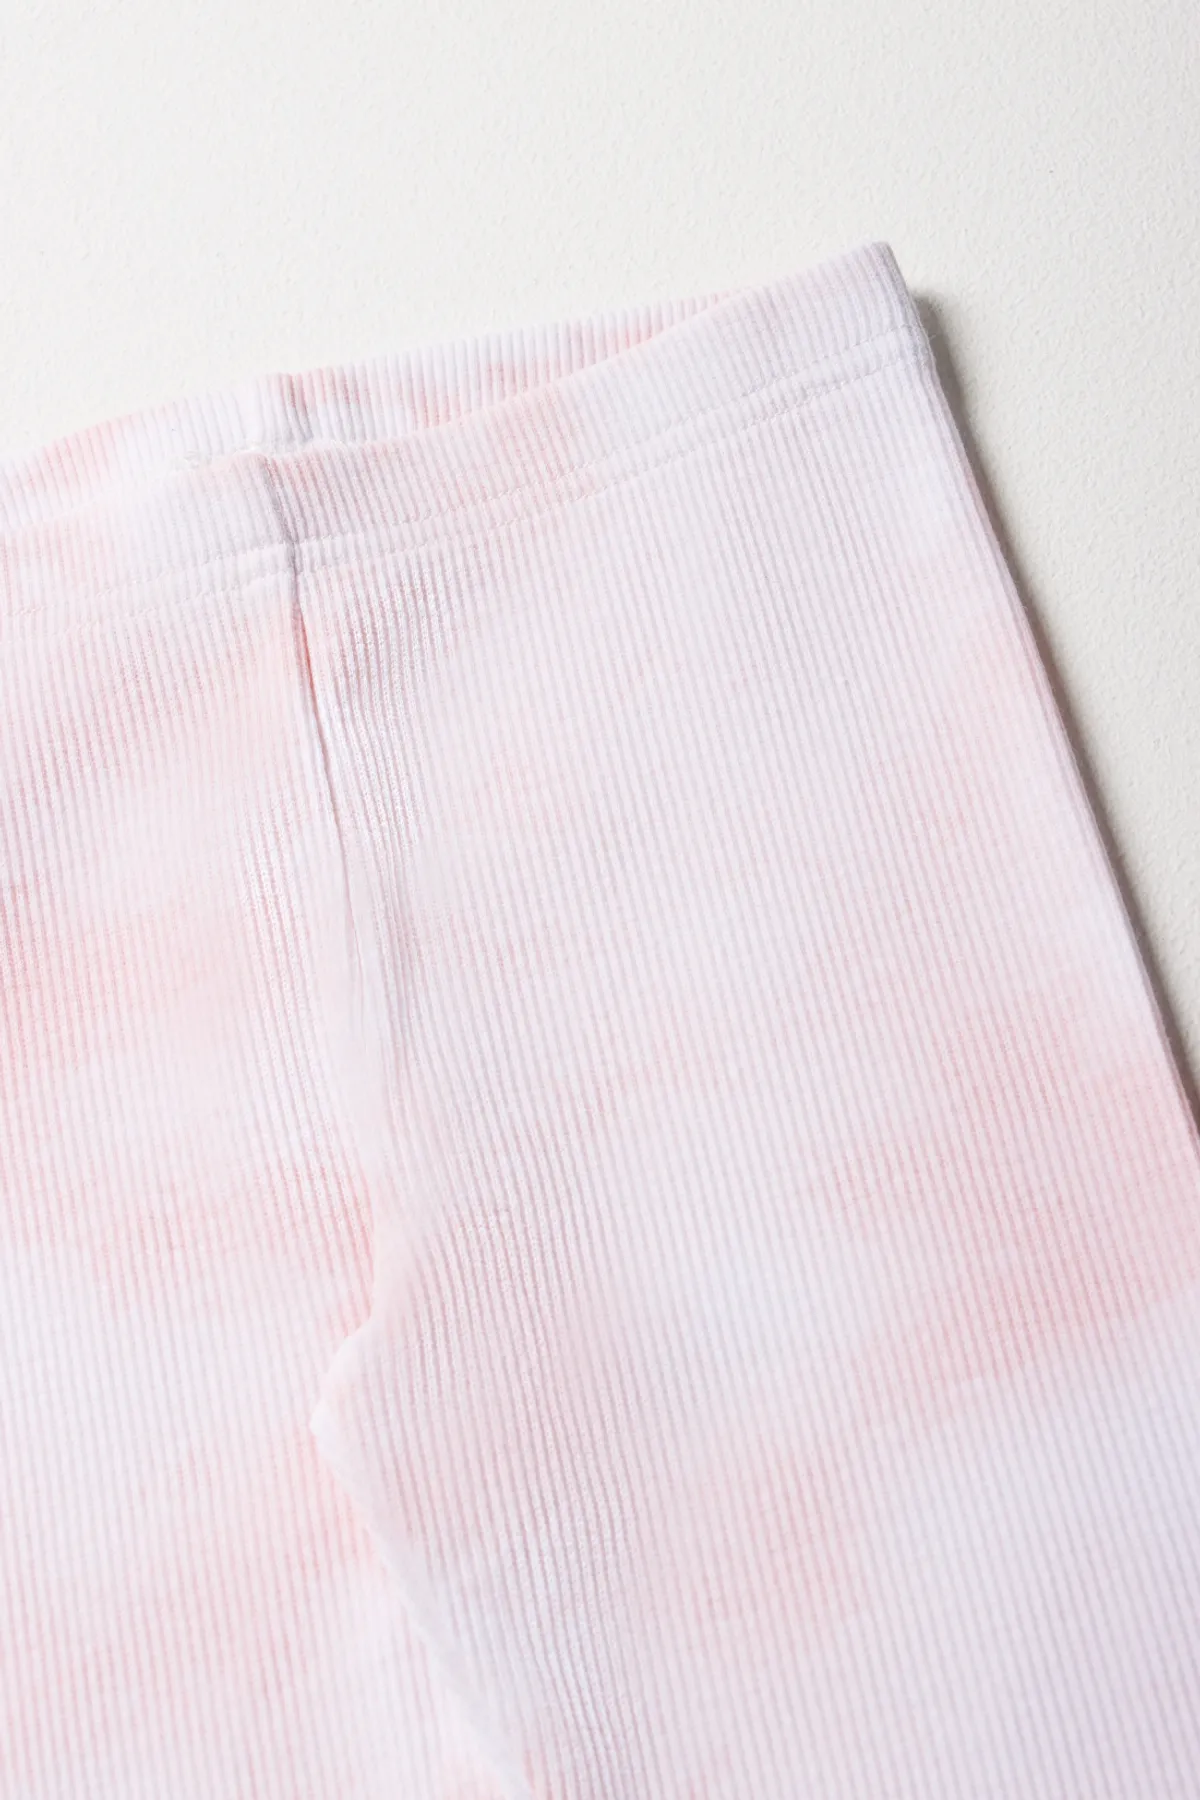 White Mark Universal 203-05-S Tie Dye Skirted Womens Leggings, Pink - Small  